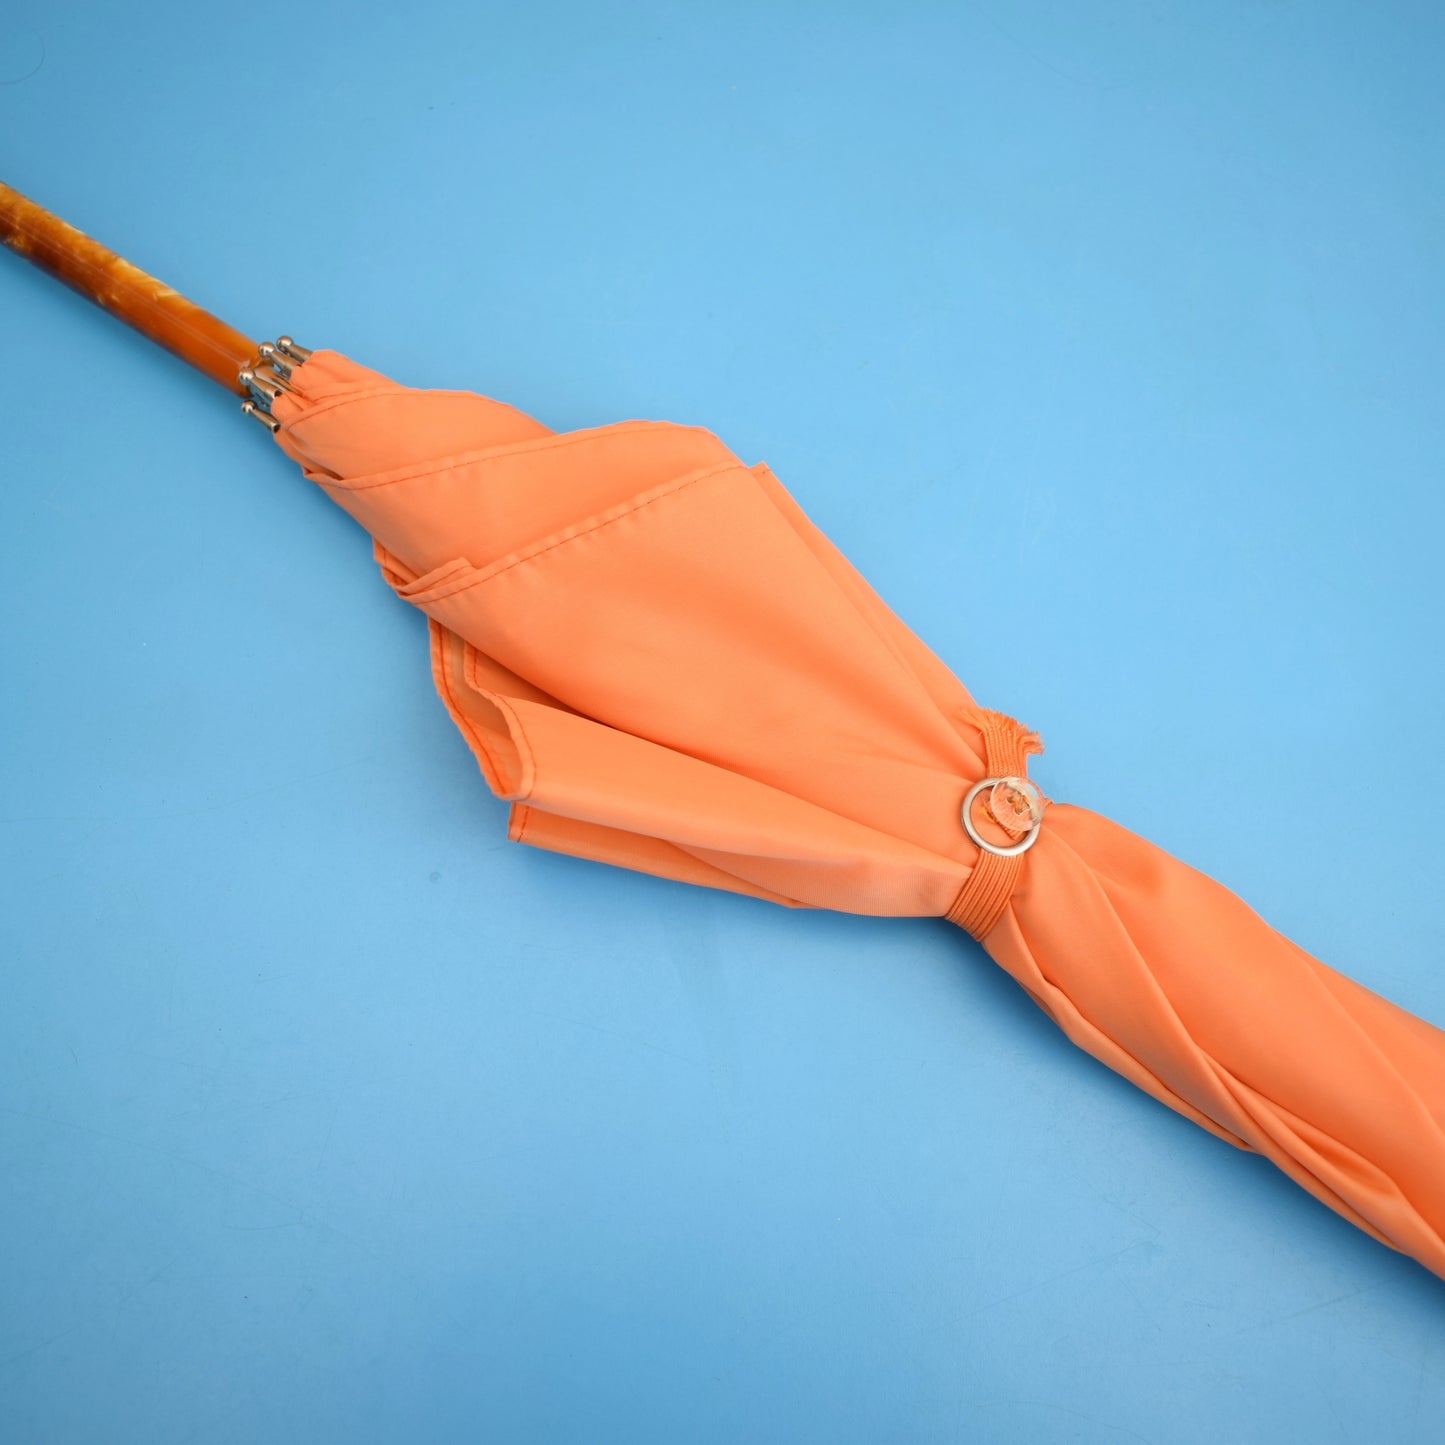 Vintage 1960s Umbrella / Parasol - Orange